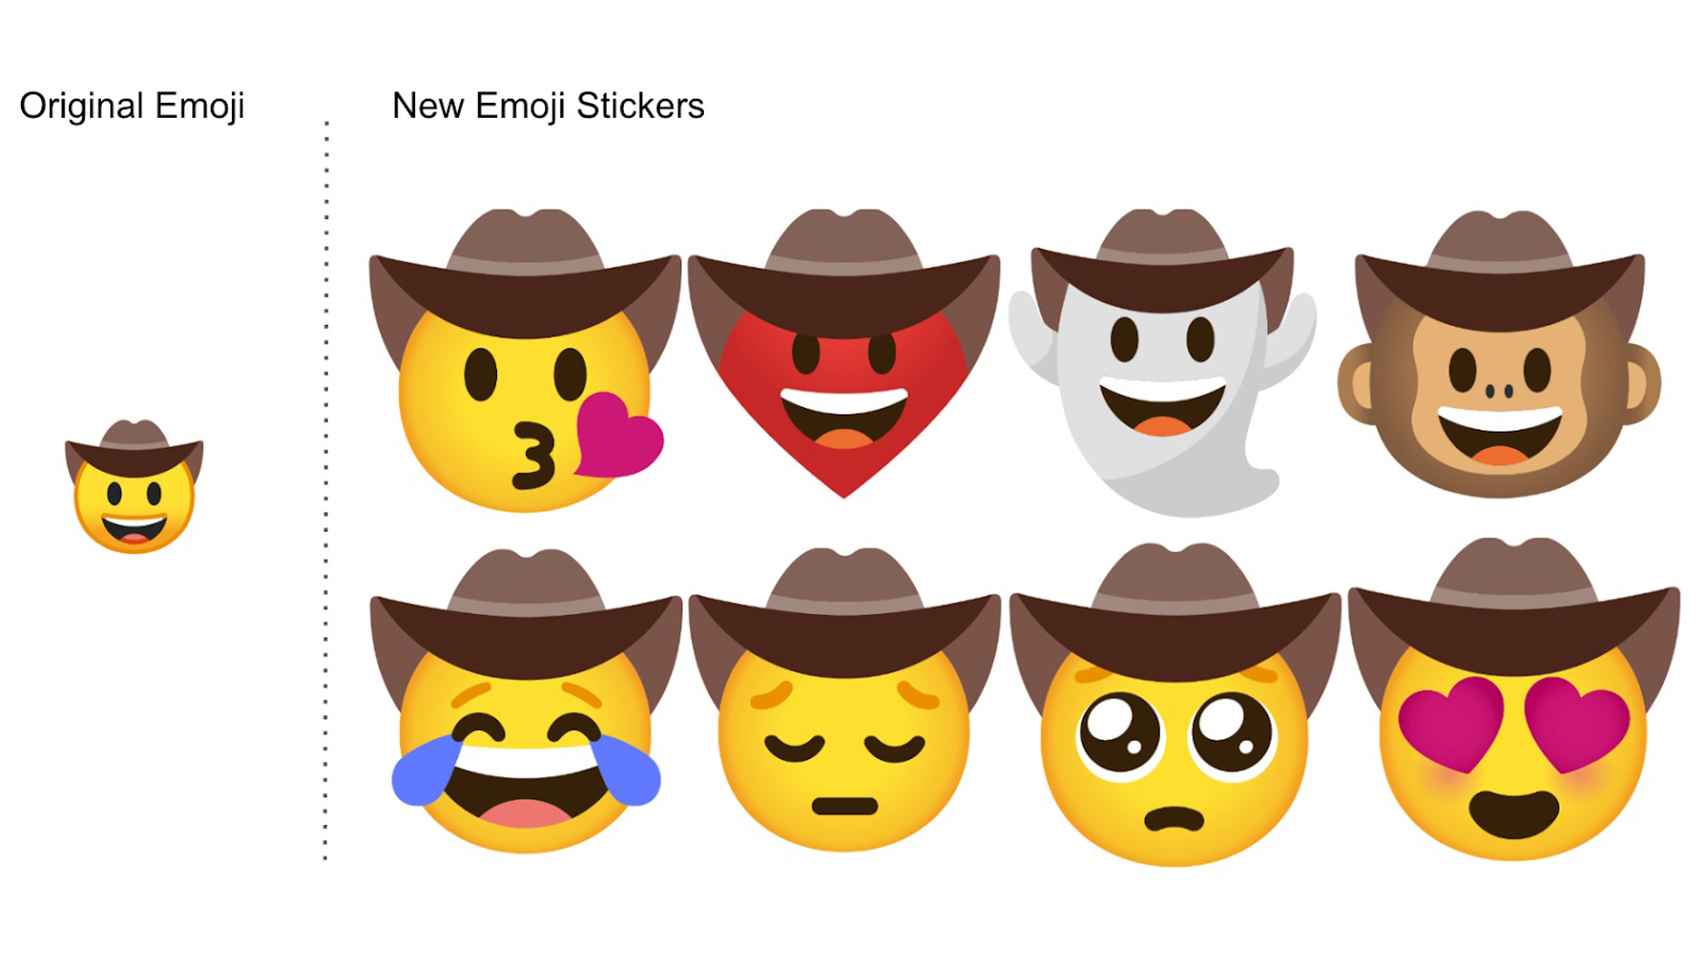 Ejemplos de emojis combinados.